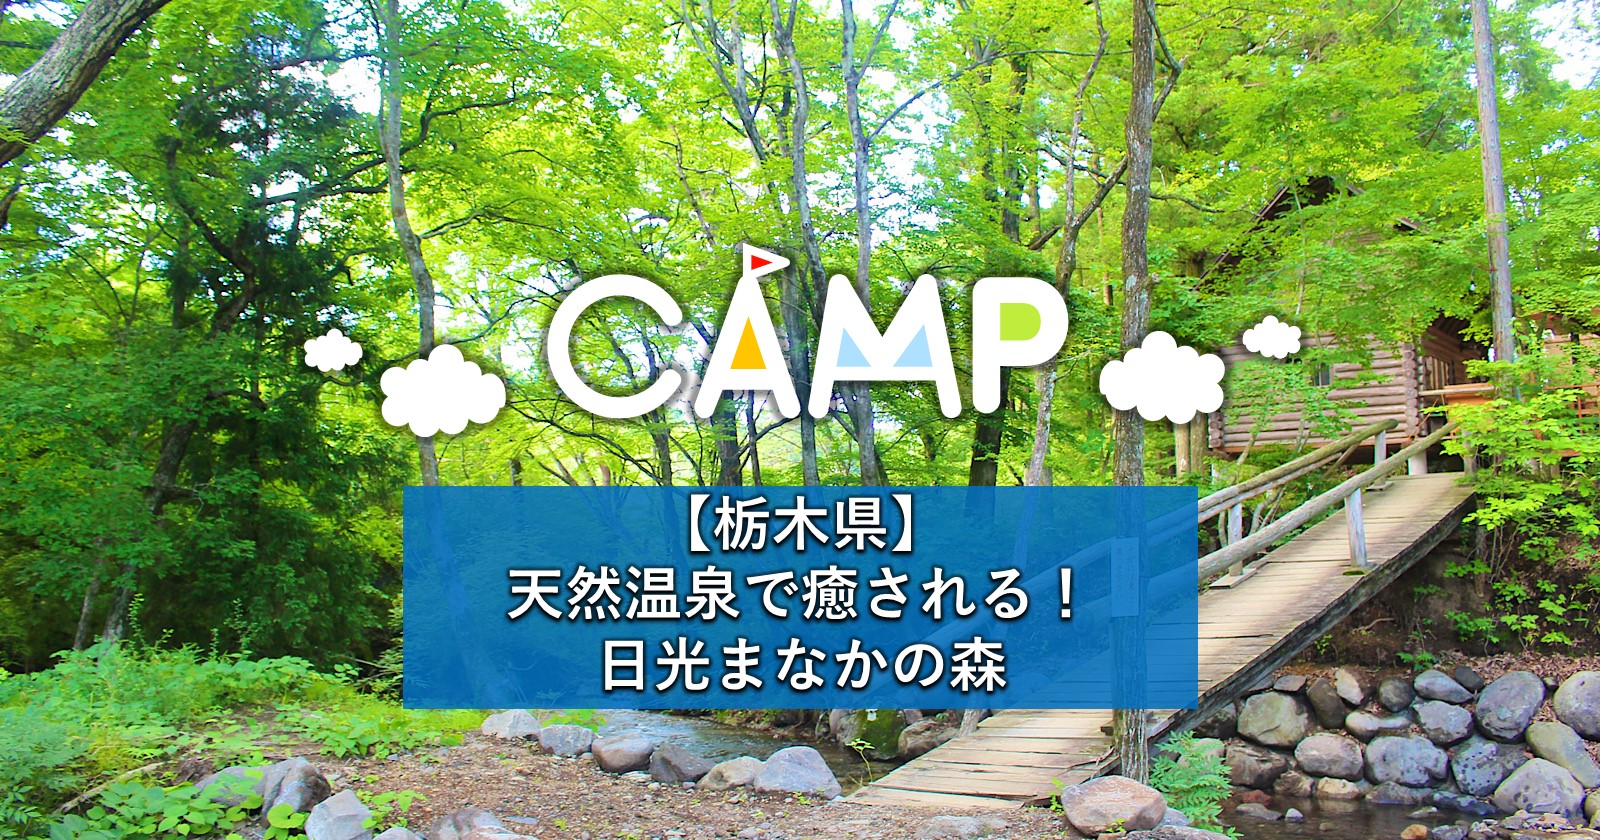 キャンプ 森 まなか の 日光まなかの森のブログや口コミ【WOM CAMP】